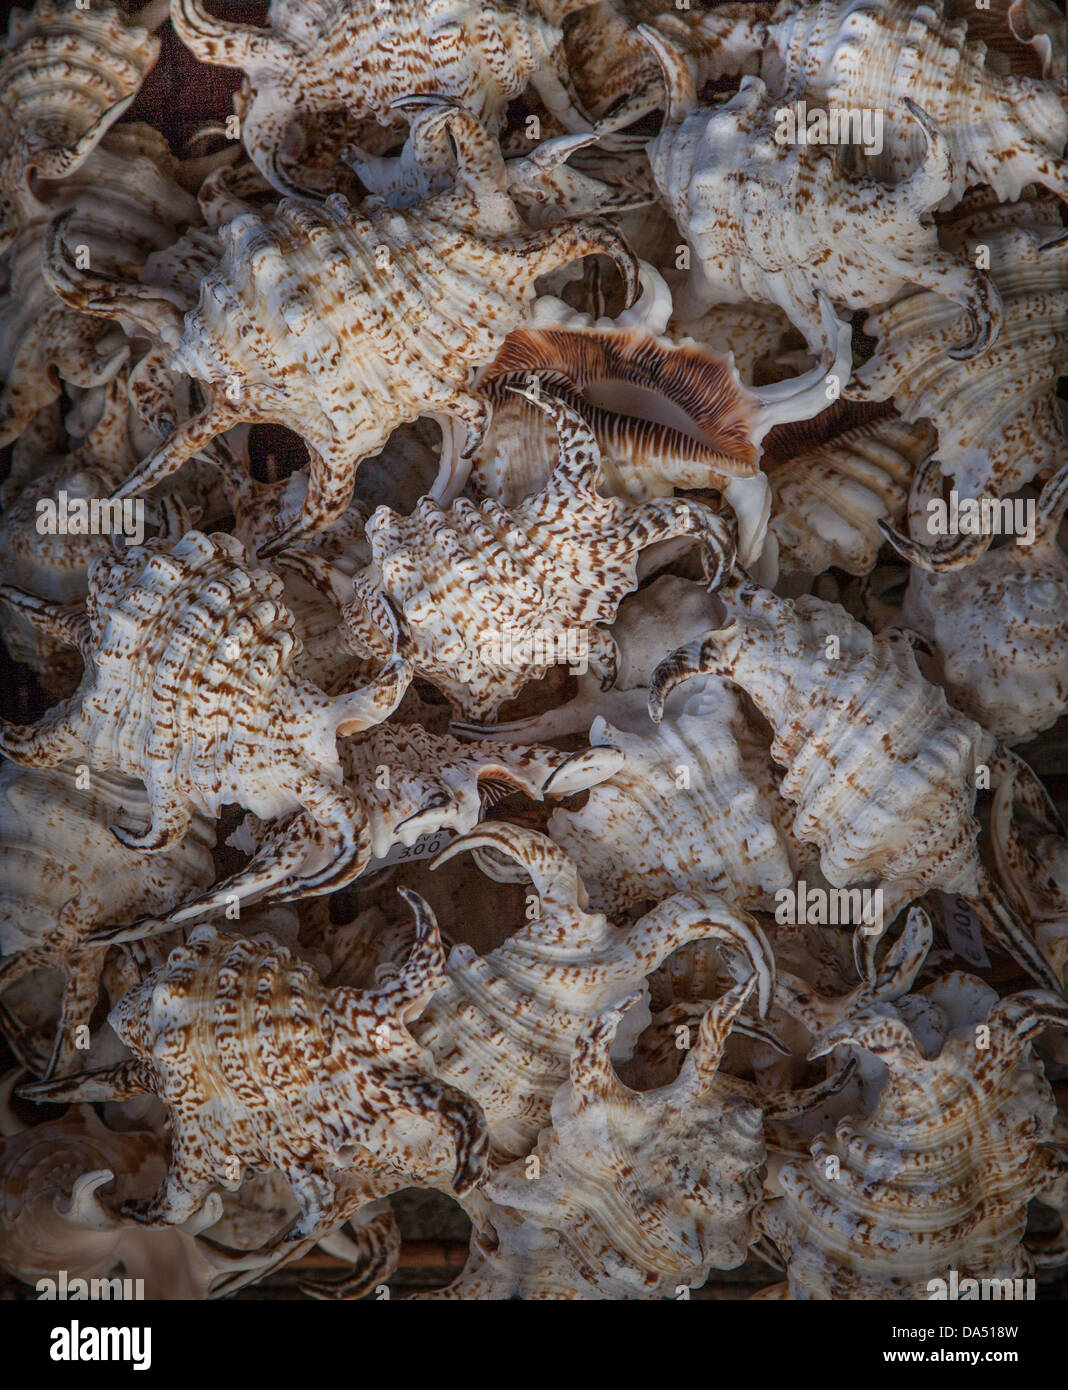 Muchas conchas de mar en una cesta Foto de stock